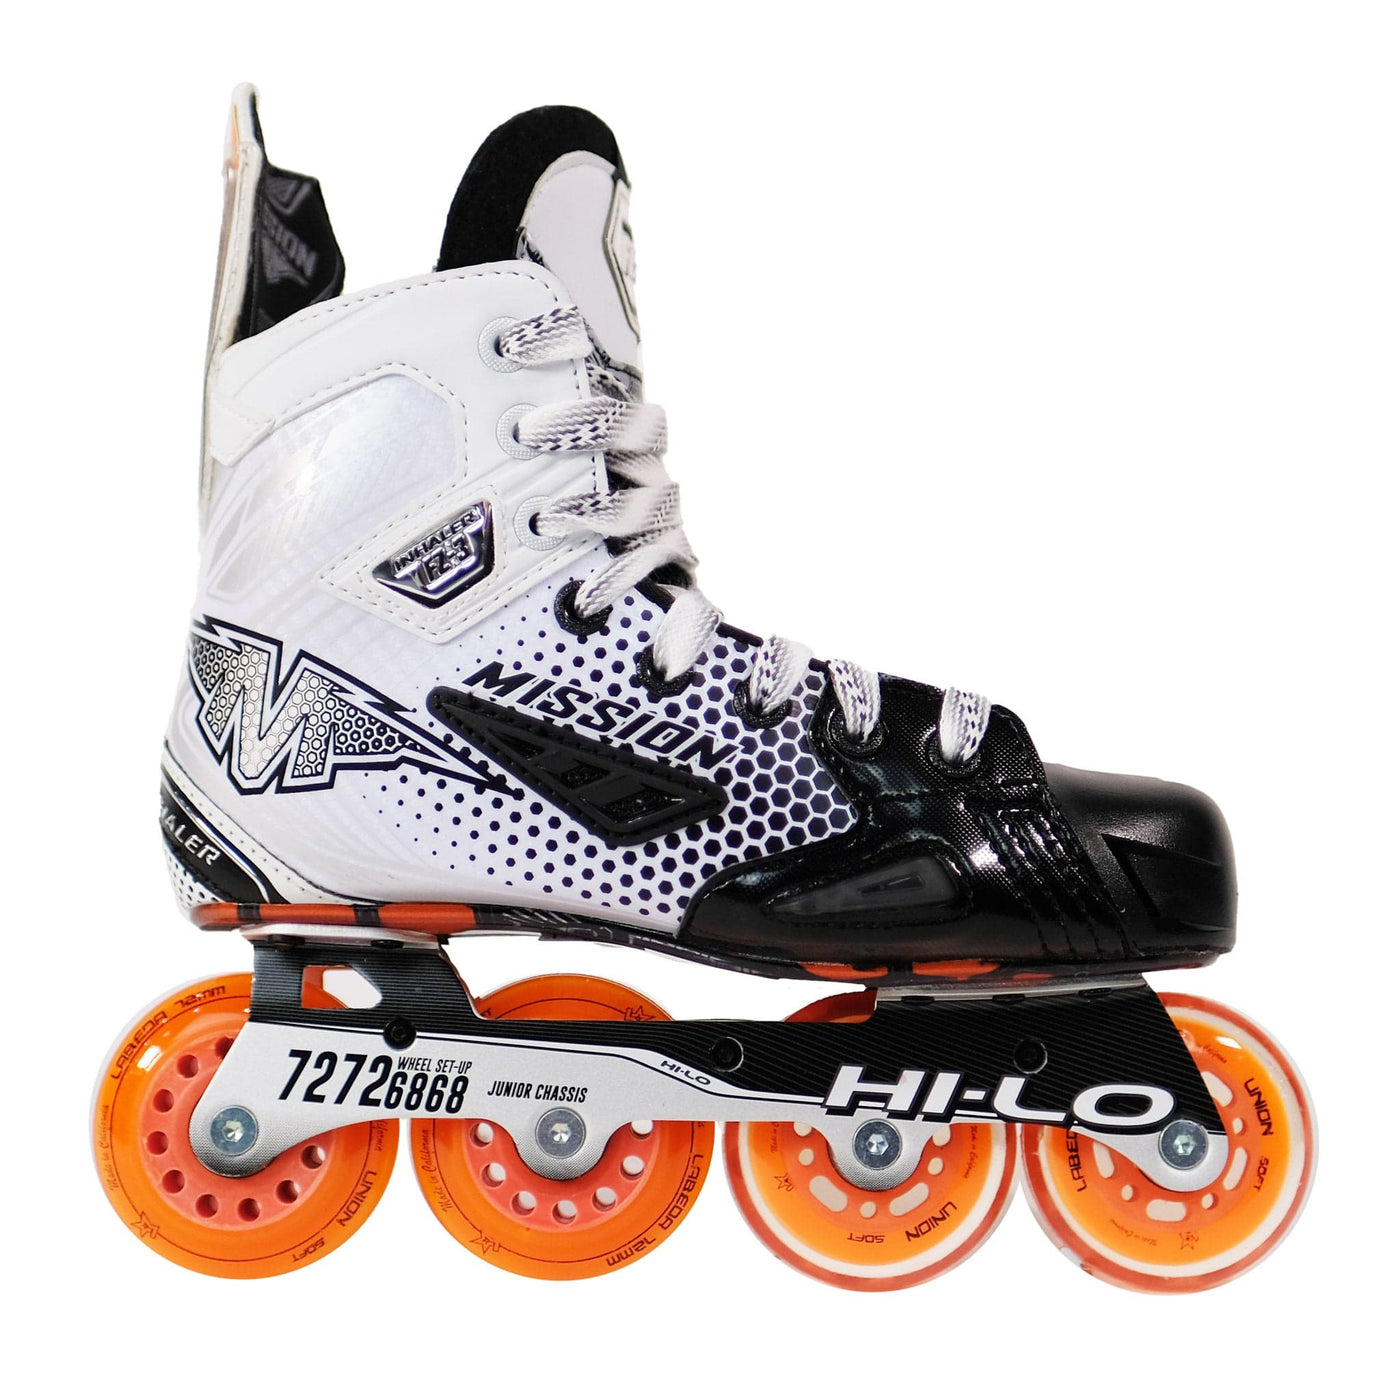 Mission Inhaler FZ-3 Junior Roller Hockey Skates